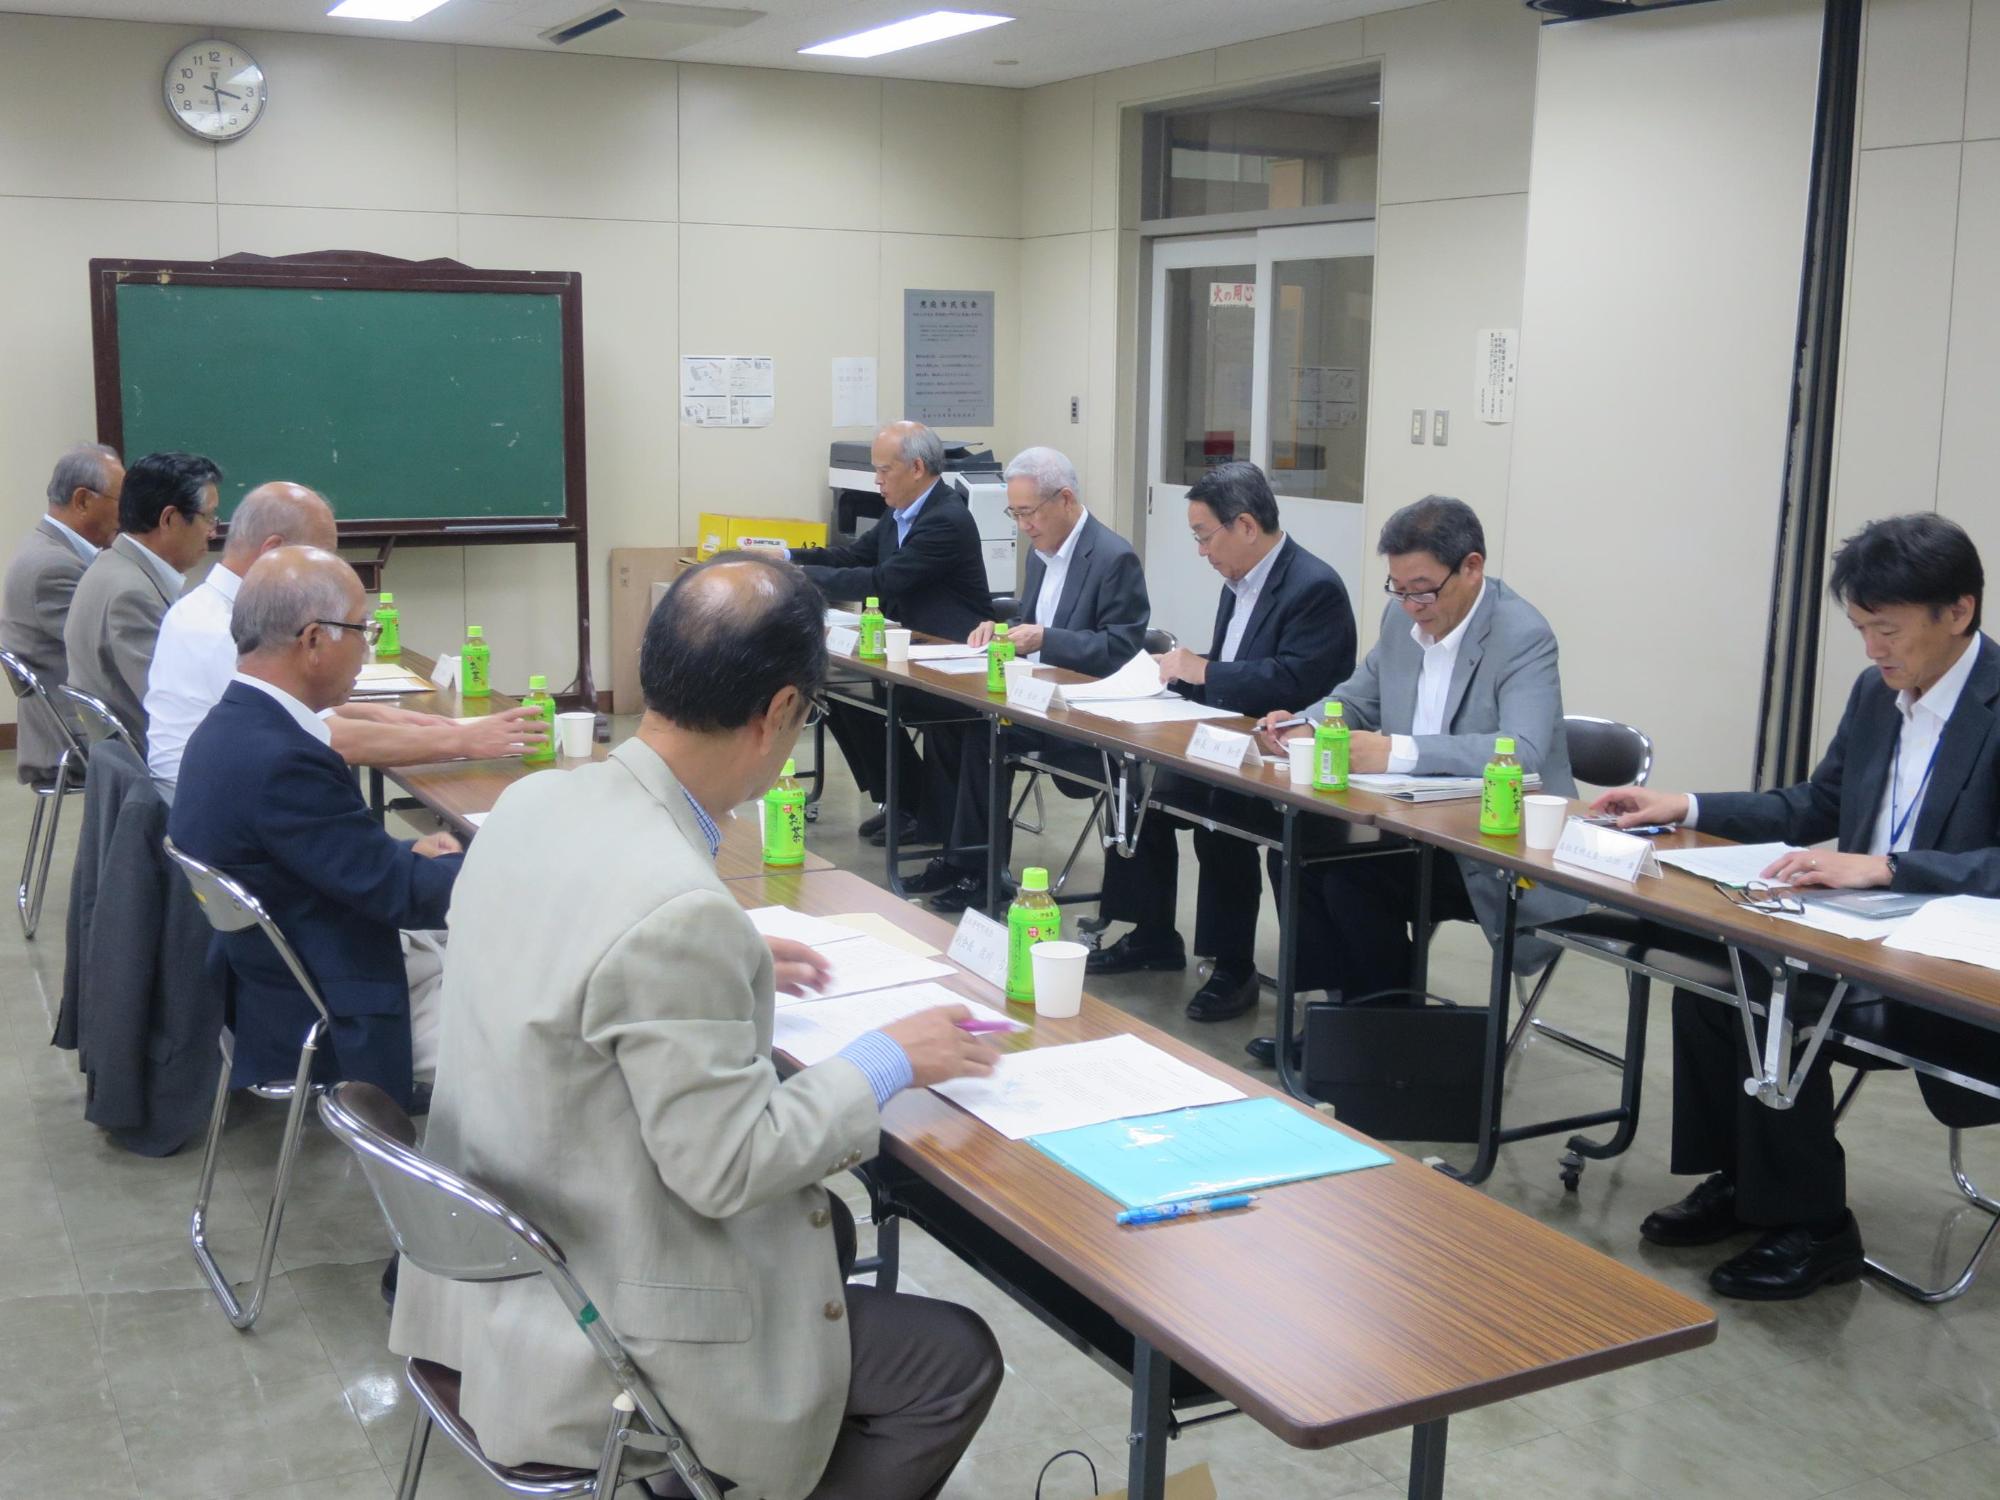 「島松町内会連合会との意見交換会」が開催されている写真